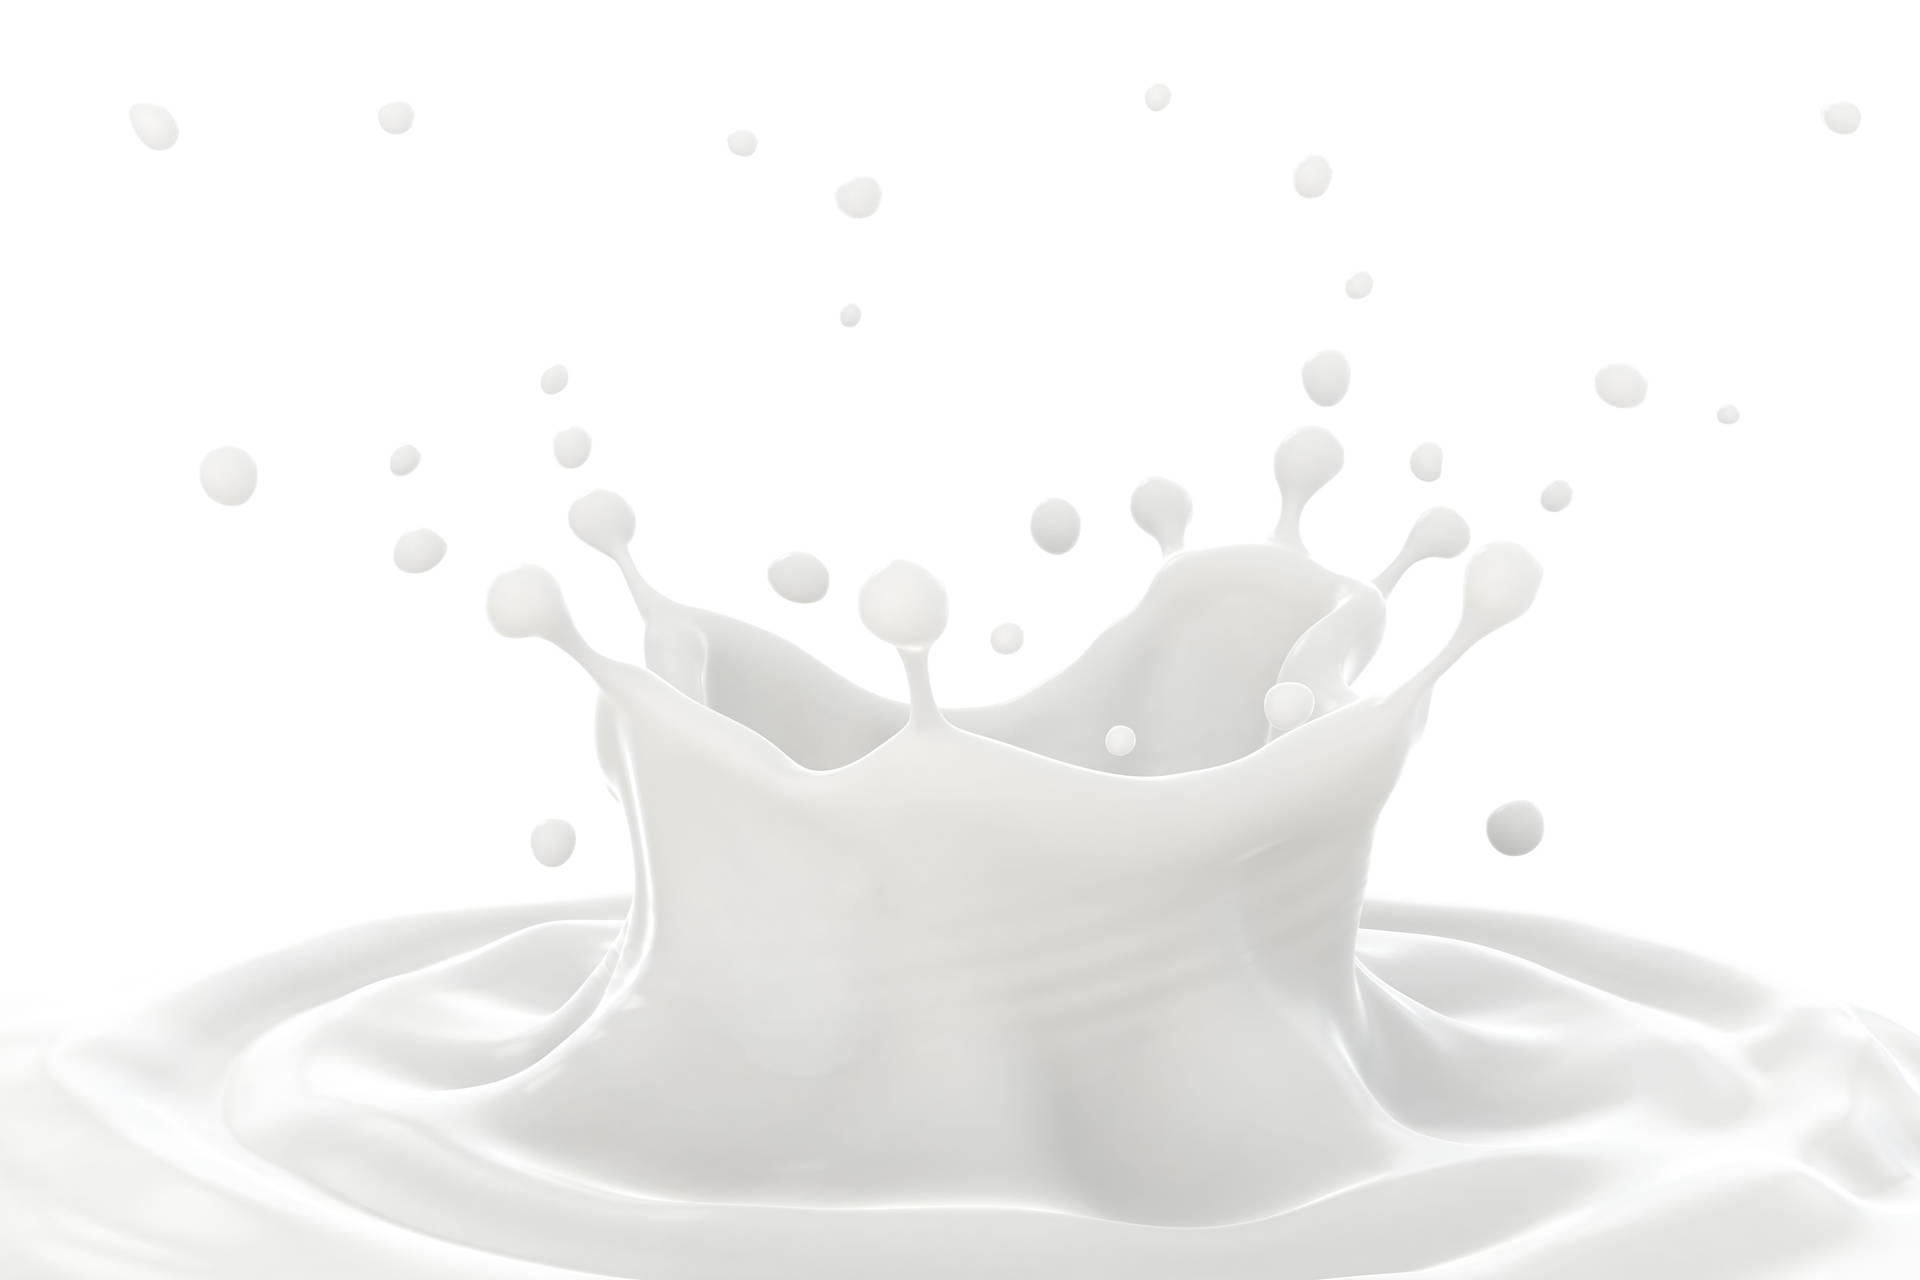 Vitestetisk Mjölkvätskesplash. Wallpaper